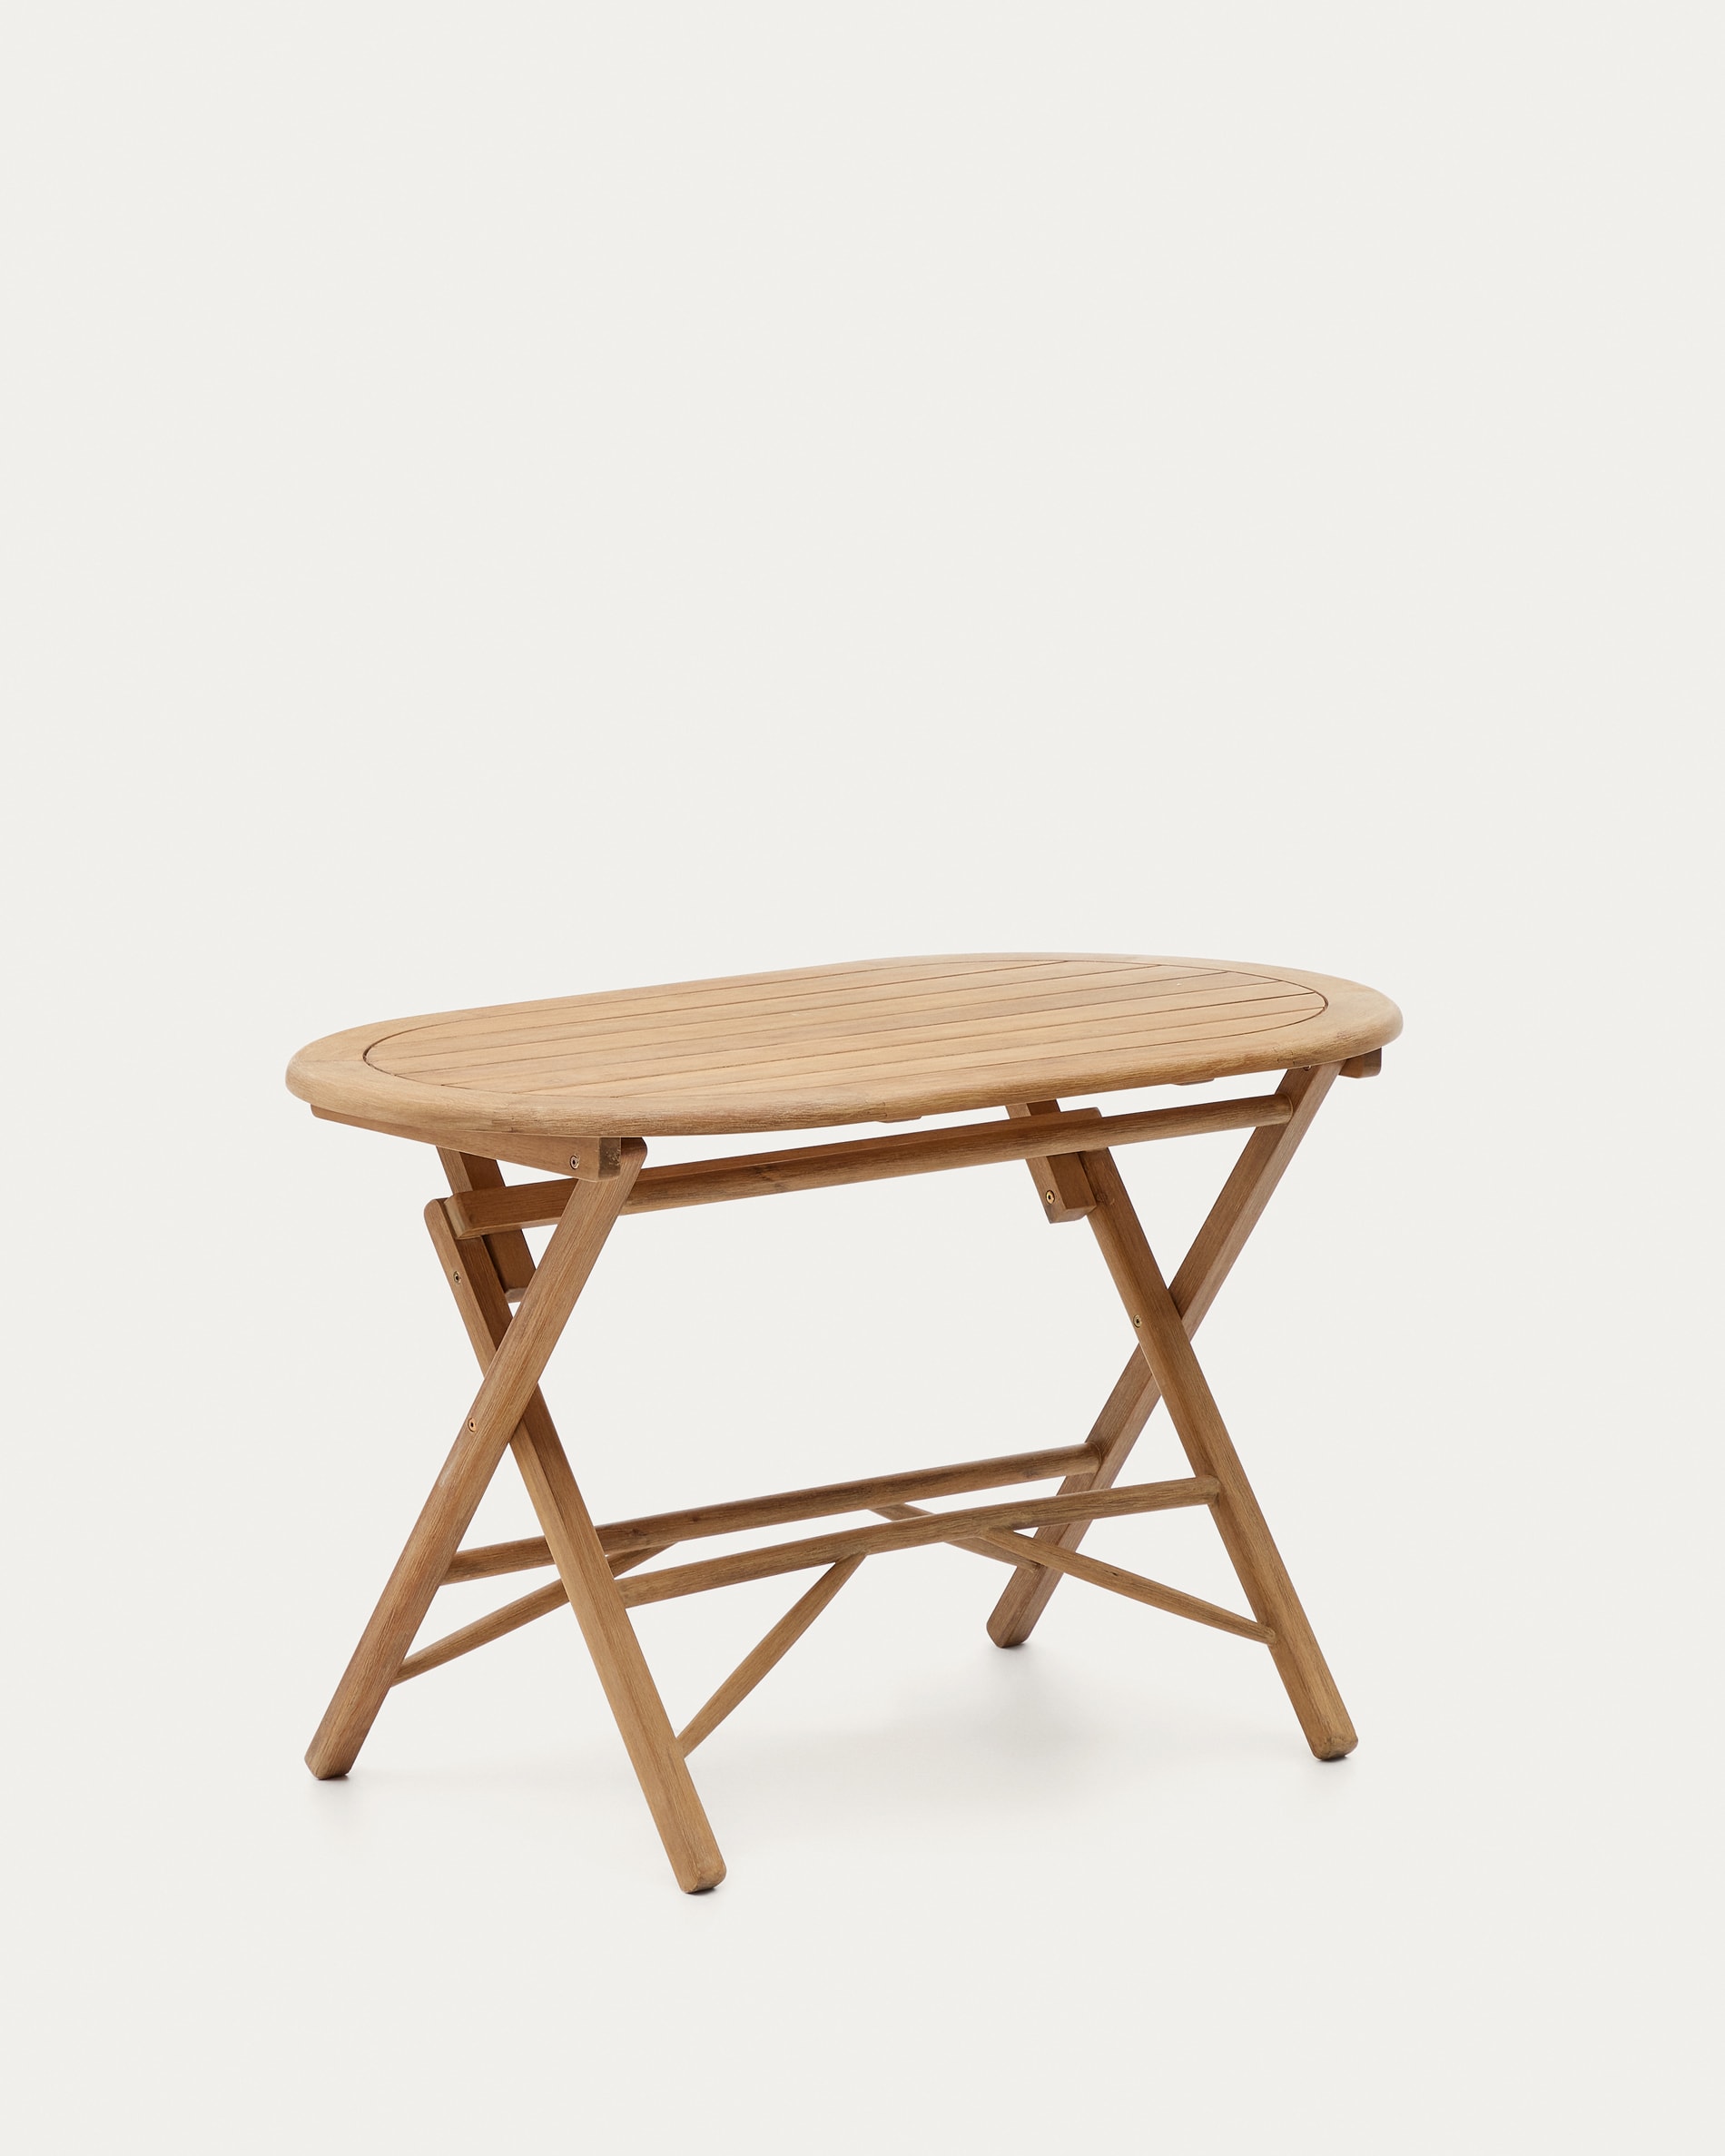  Mesa plegable de madera con altura ajustable y patas